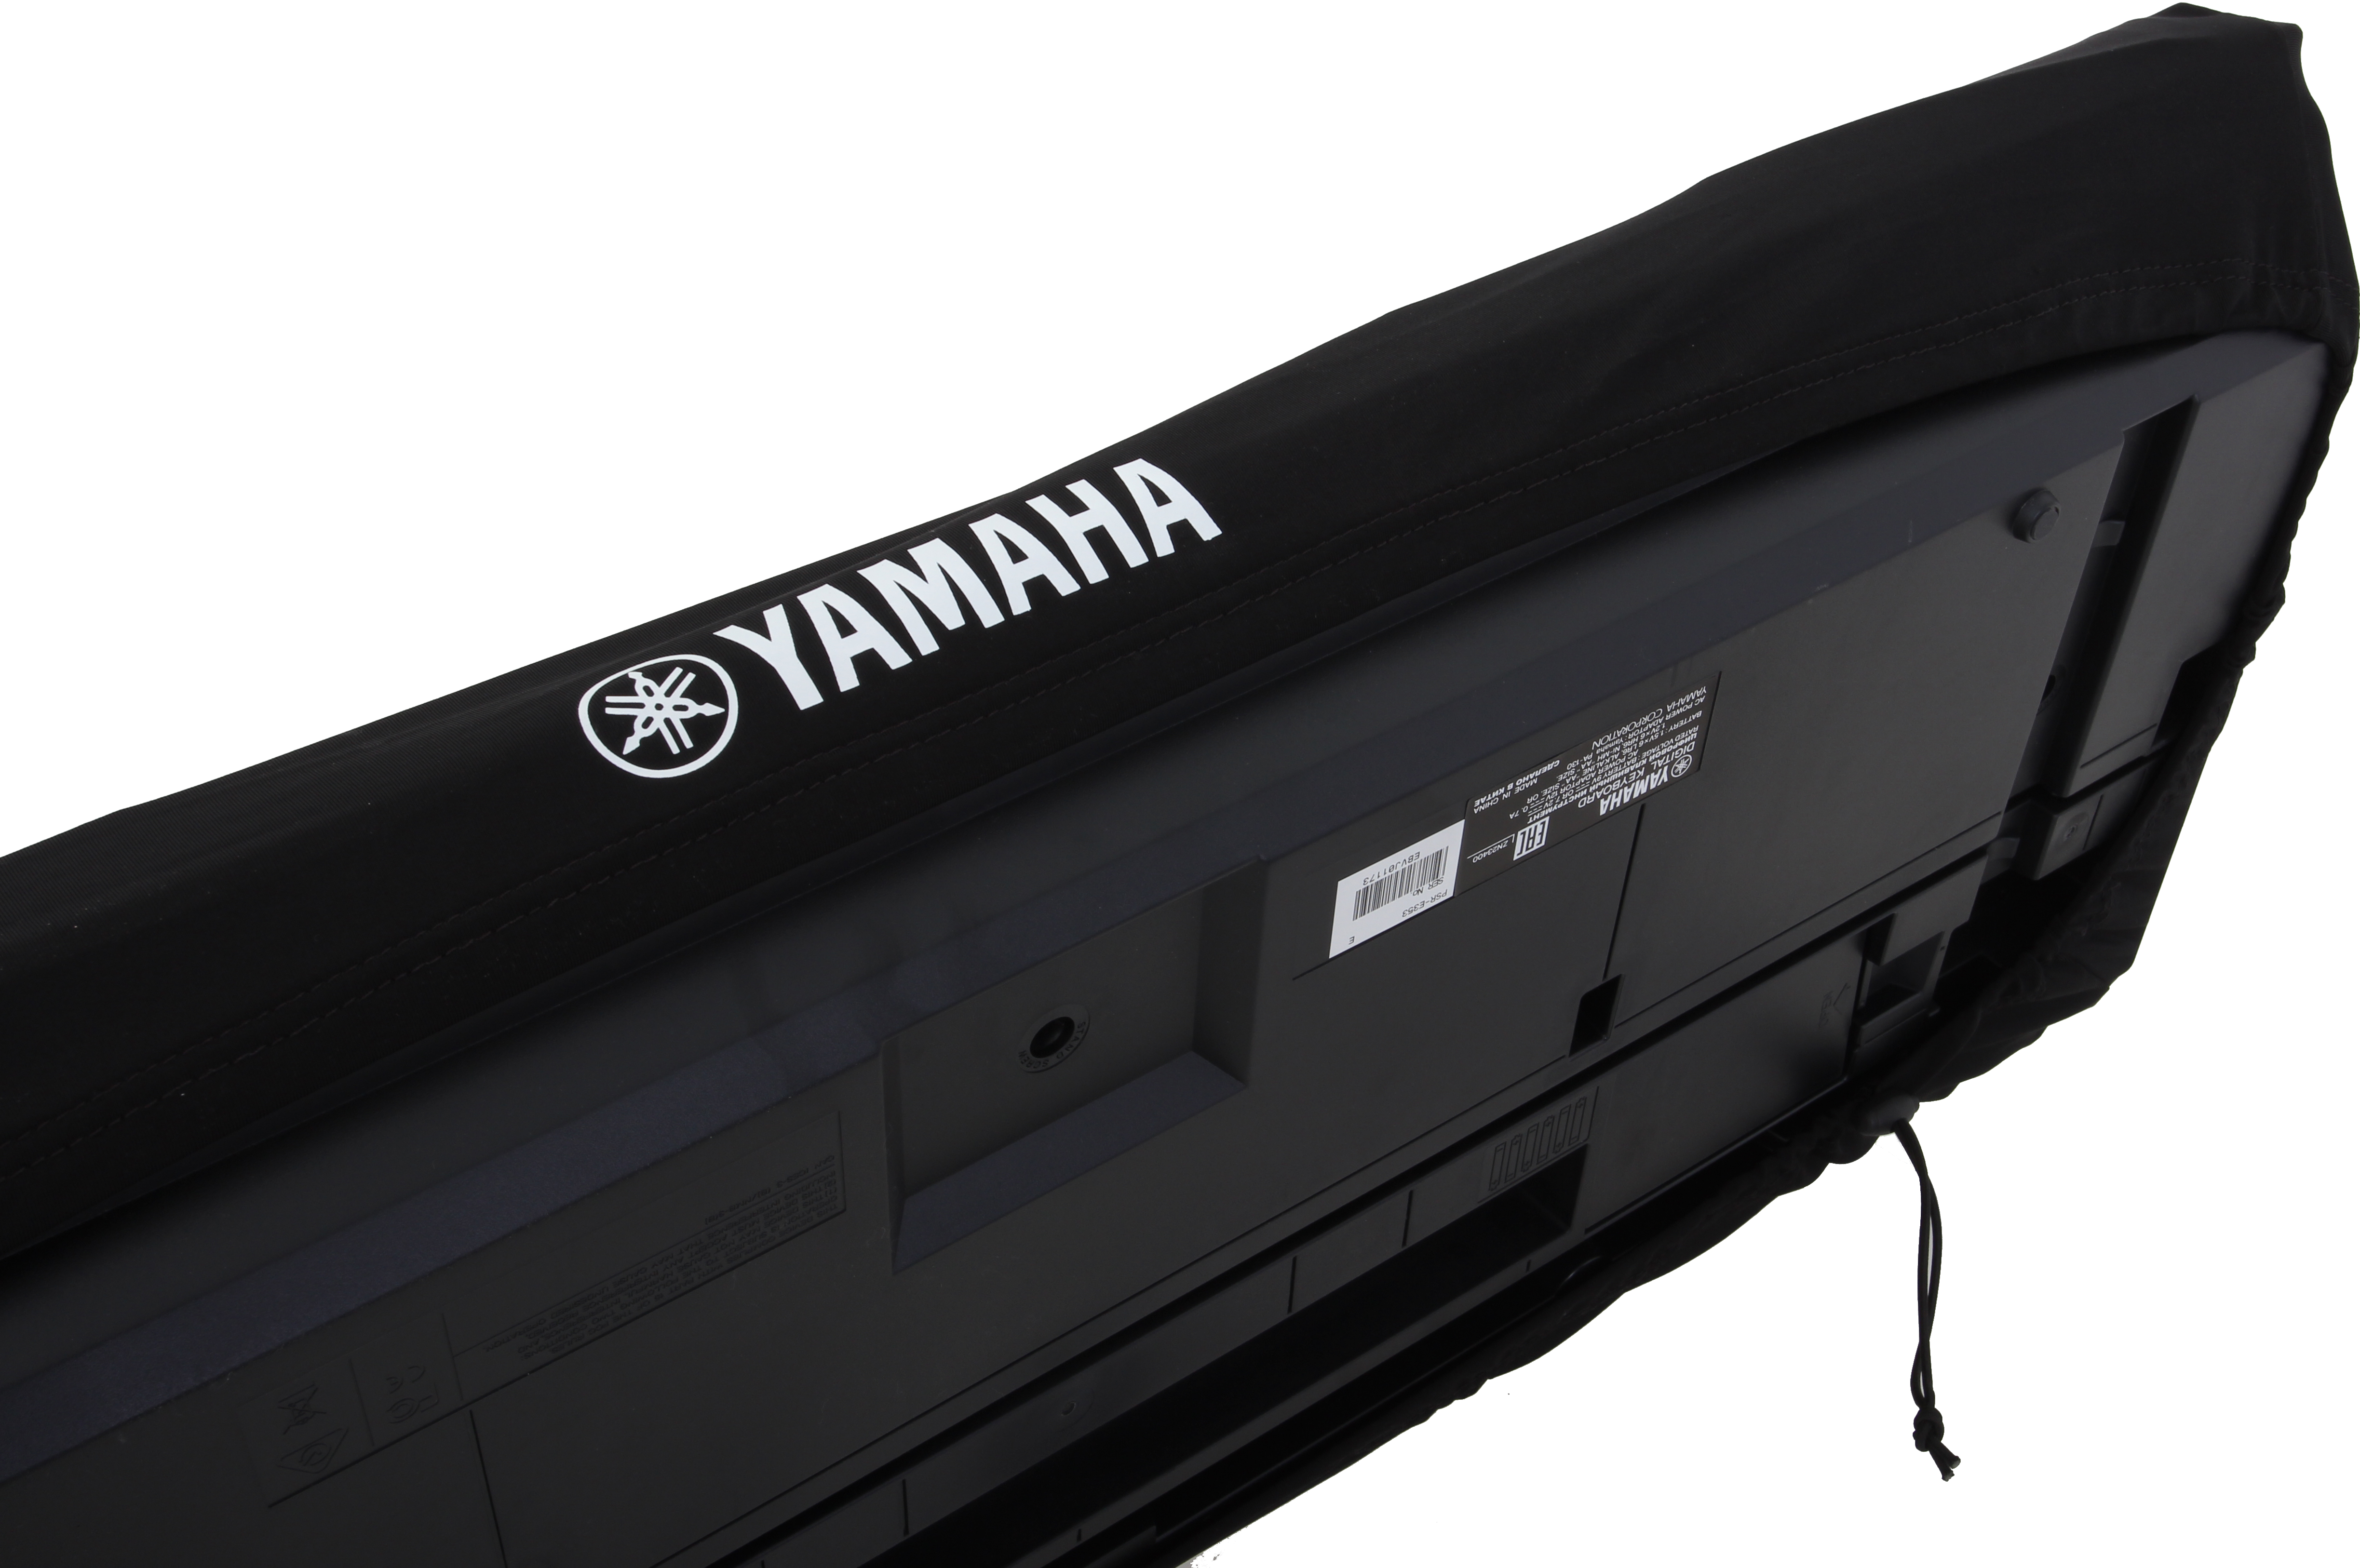 Yamaha DC11A Dust Cover 121 x 40,5 x 15